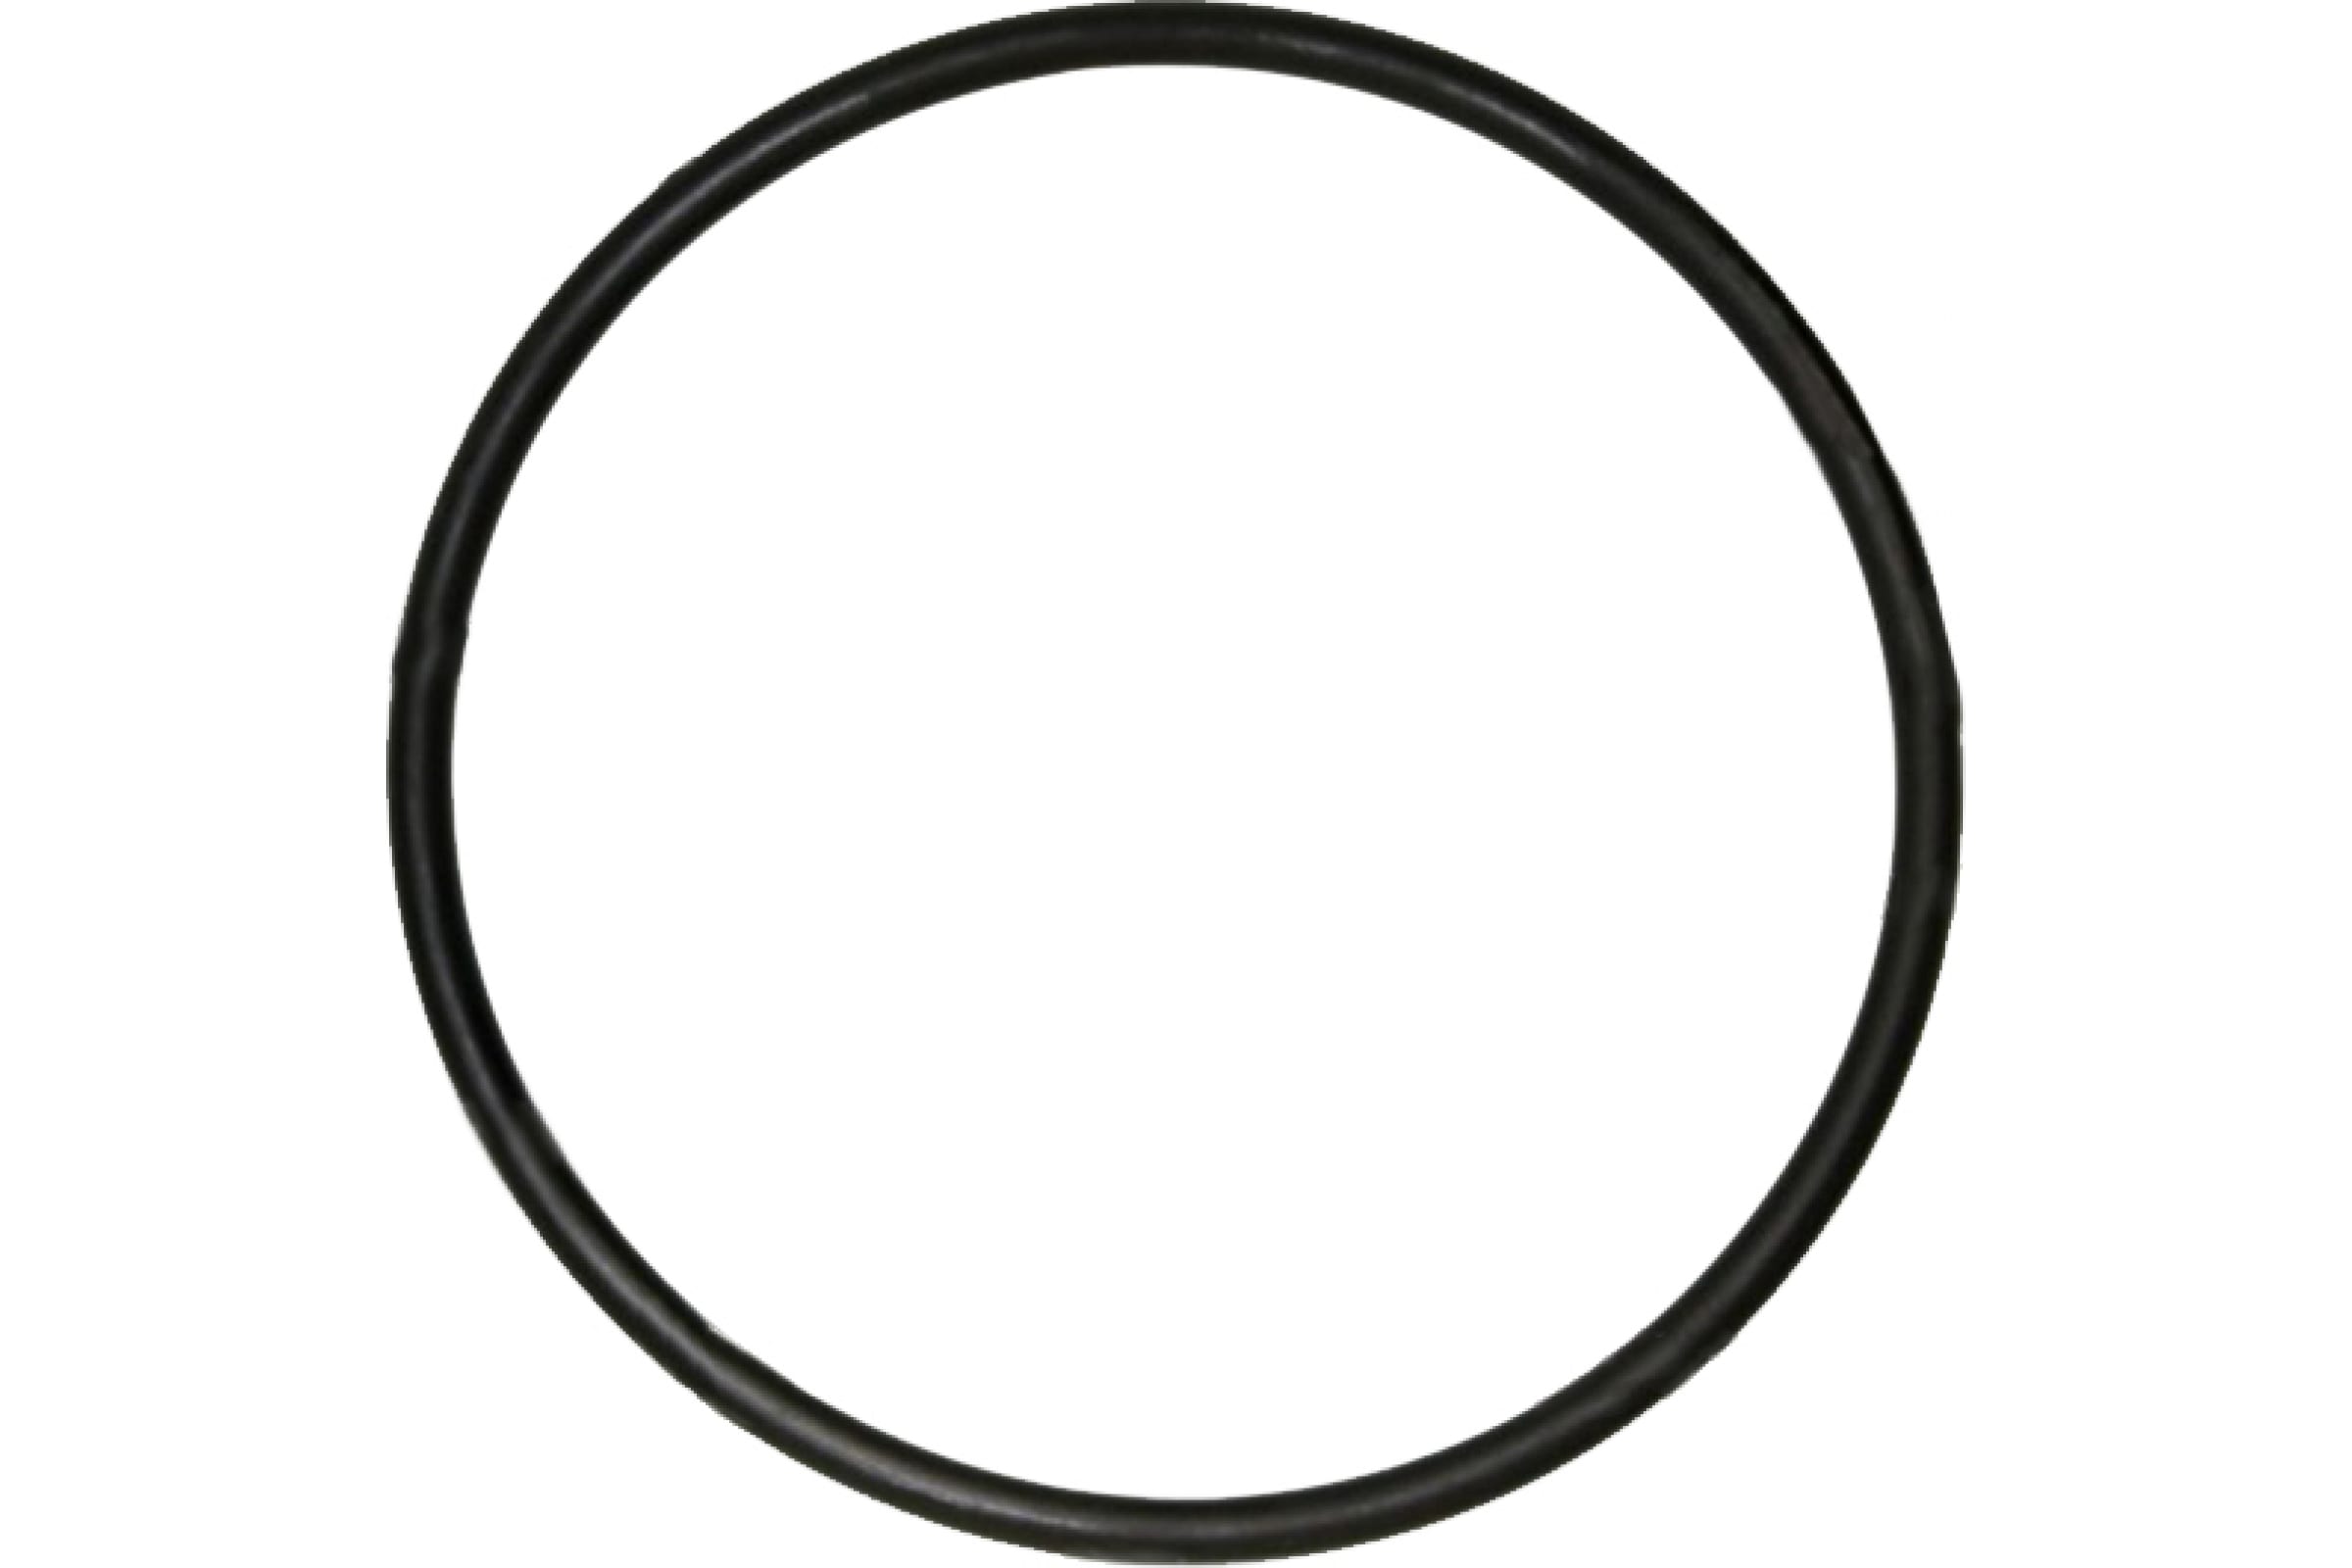 Промрукав Кольцо резиновое уплотнительное для двустенной трубы д50 1шт PR08.3156 резиновое уплотнительное кольцо для двустенной трубы промрукав